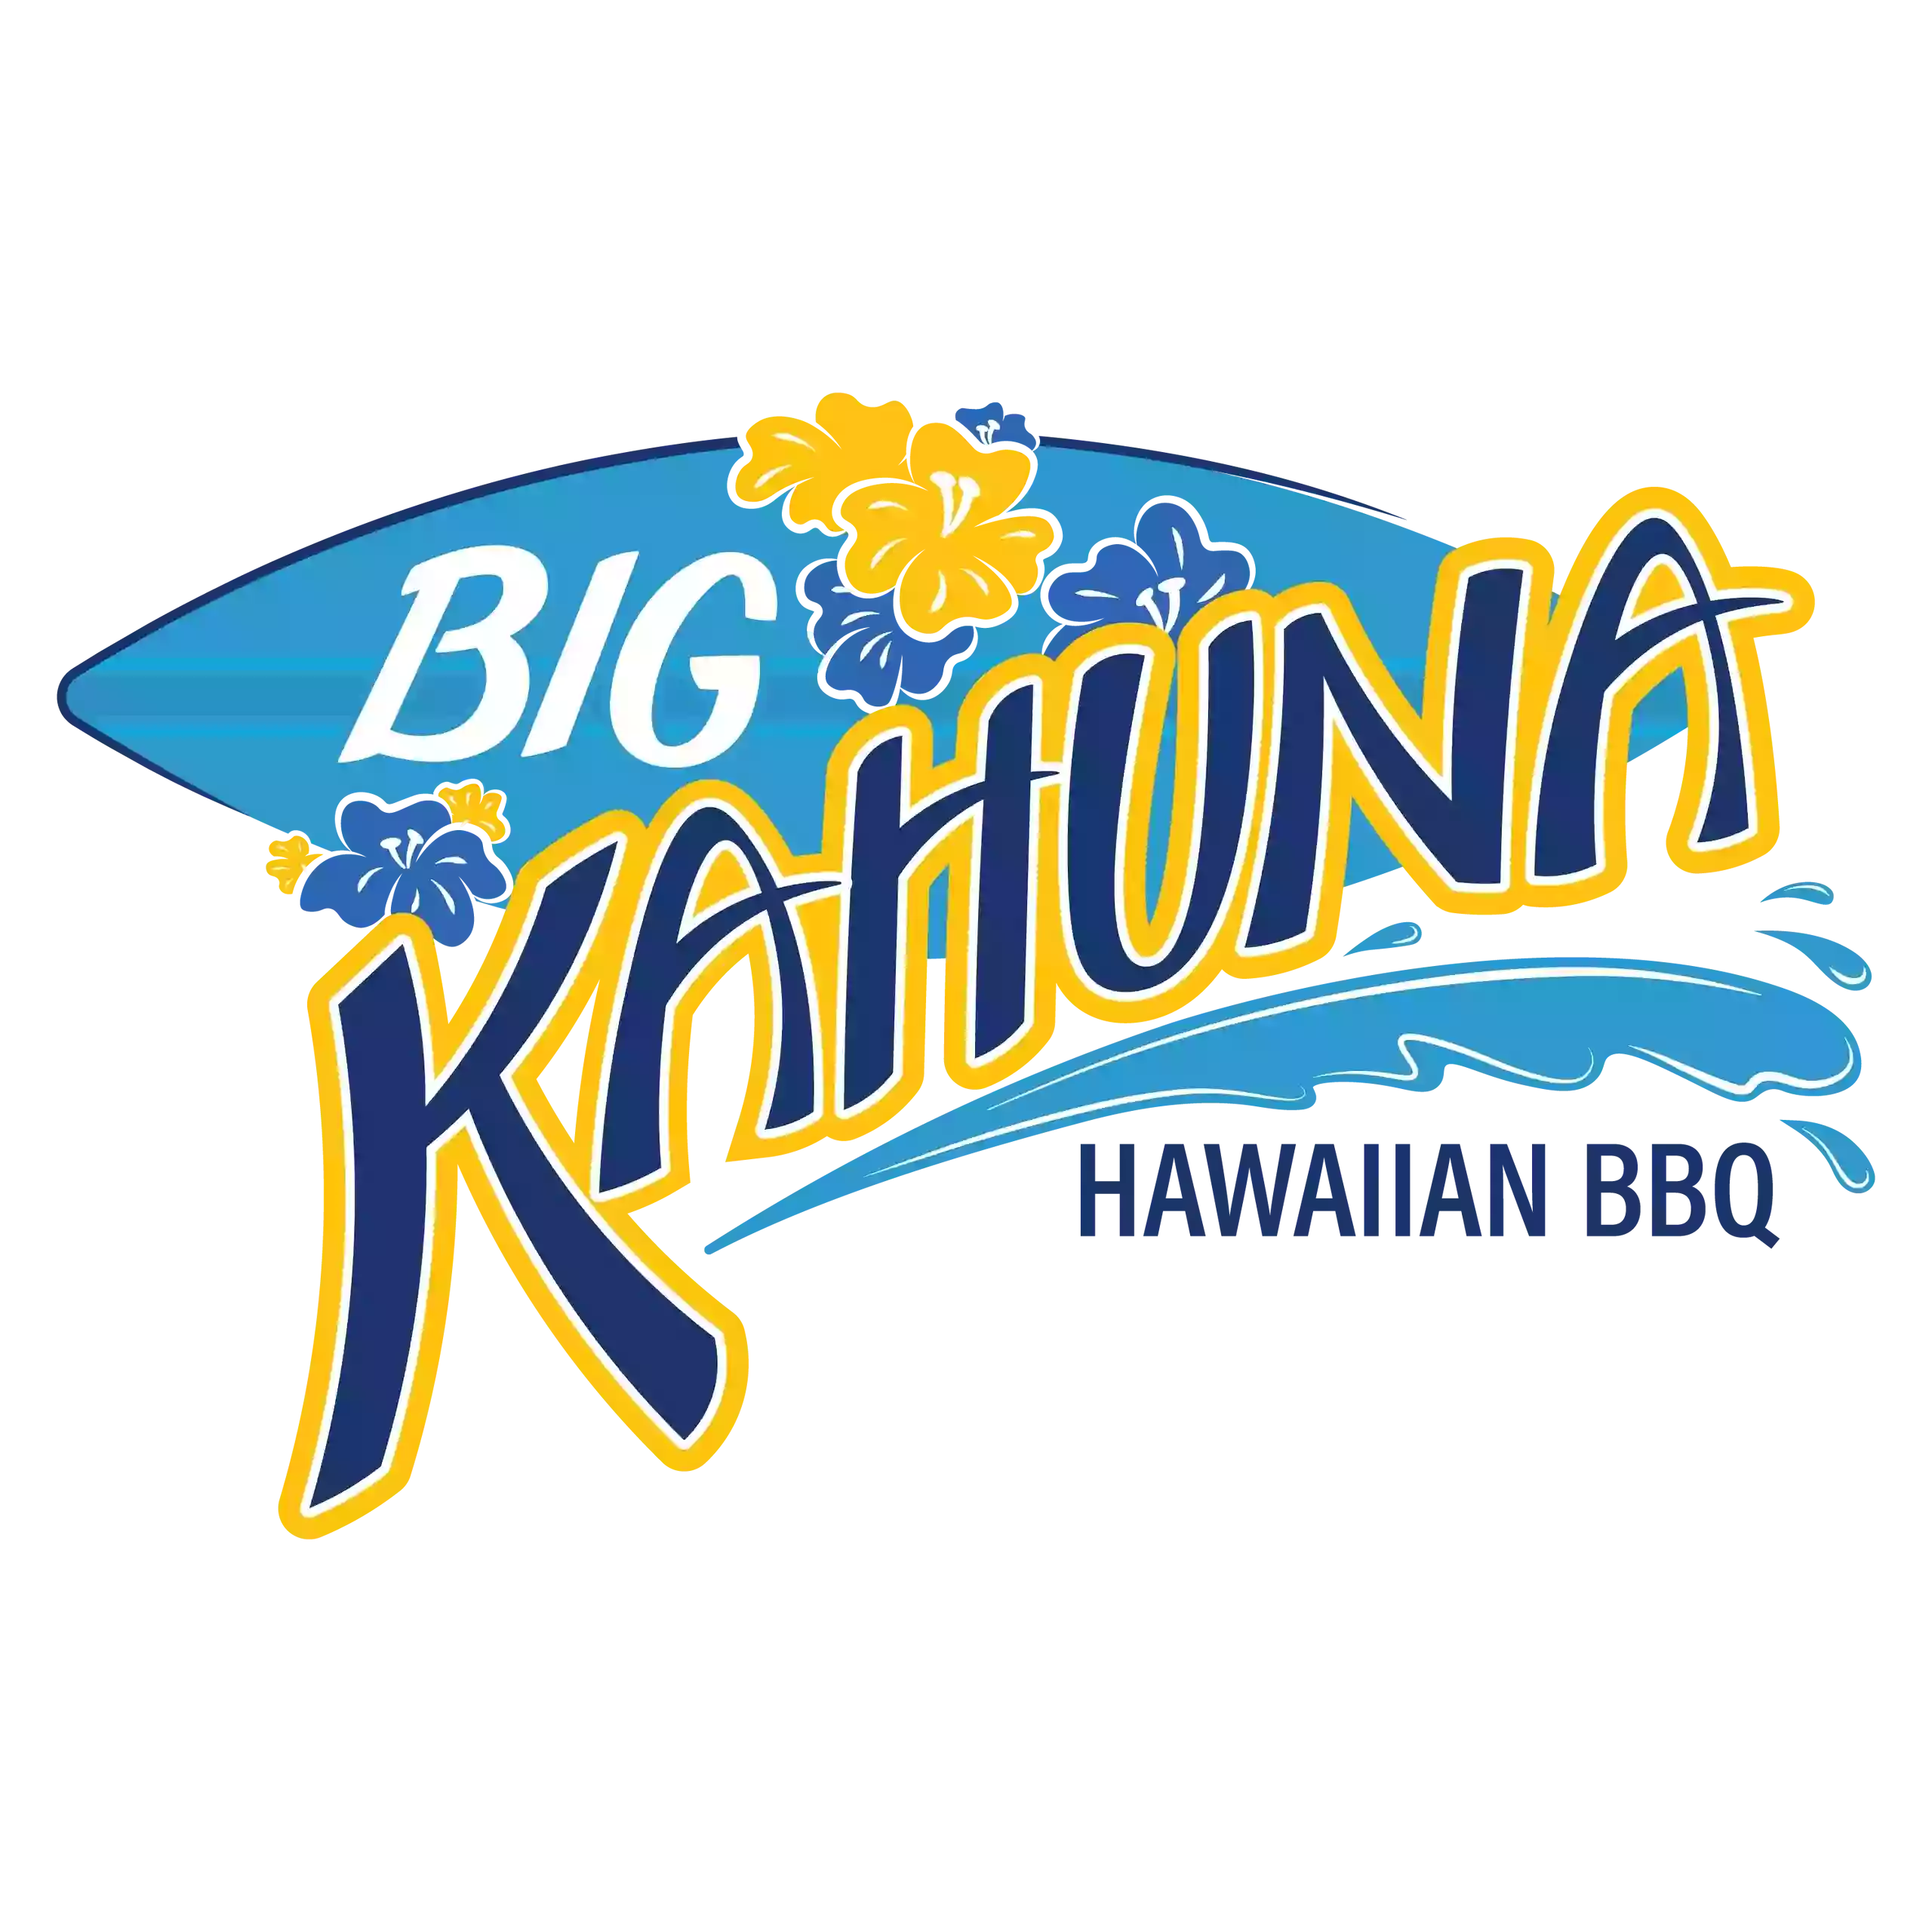 Big Kahuna Hawaiian BBQ